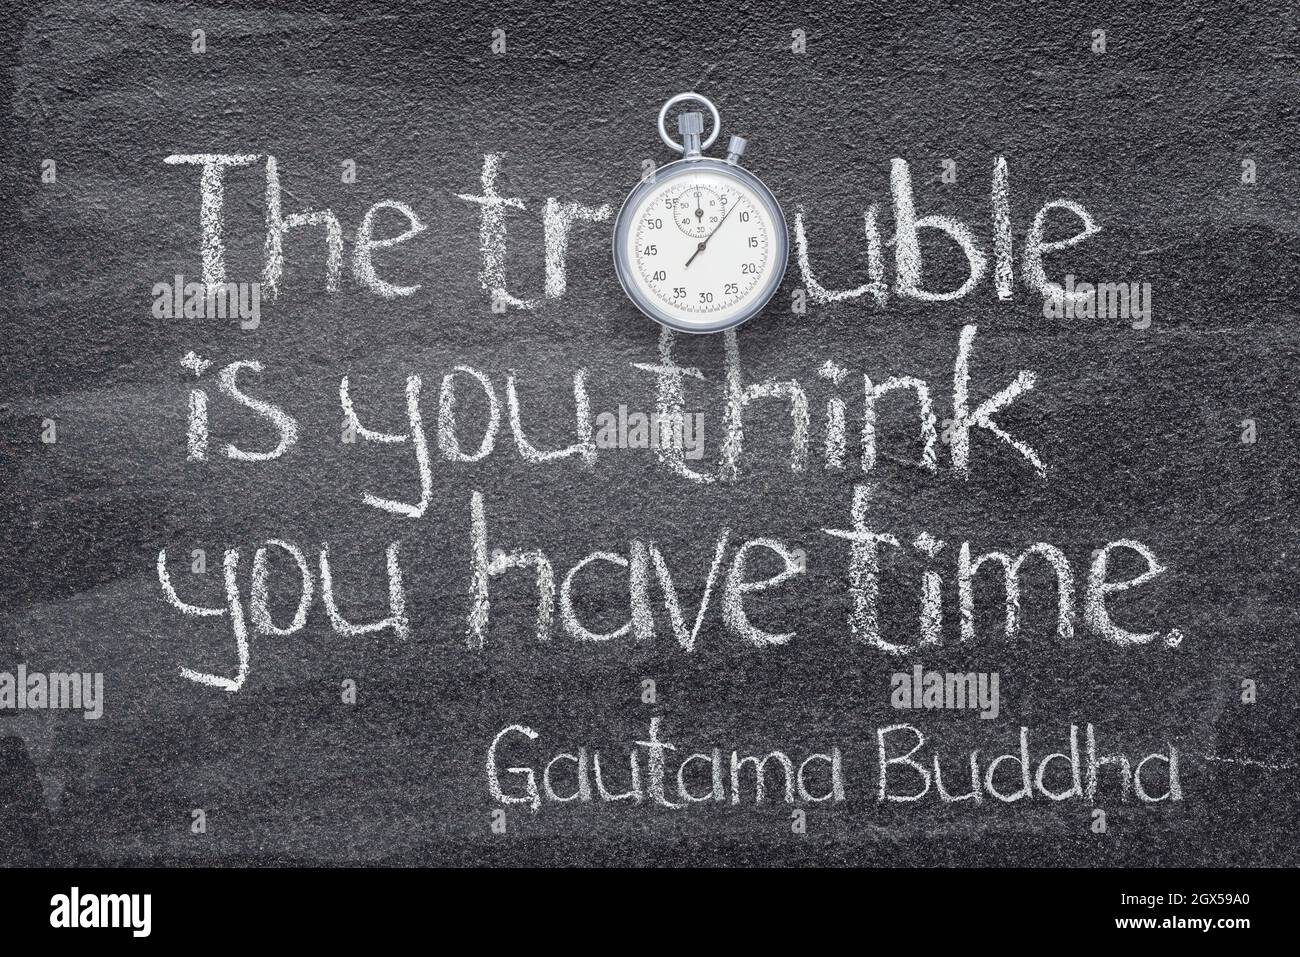 Das Problem ist, dass Sie denken, Sie haben Zeit - Zitat von Gautama Buddha geschrieben auf Kreidetafel mit Stoppuhrsymbol anstelle von O Stockfoto